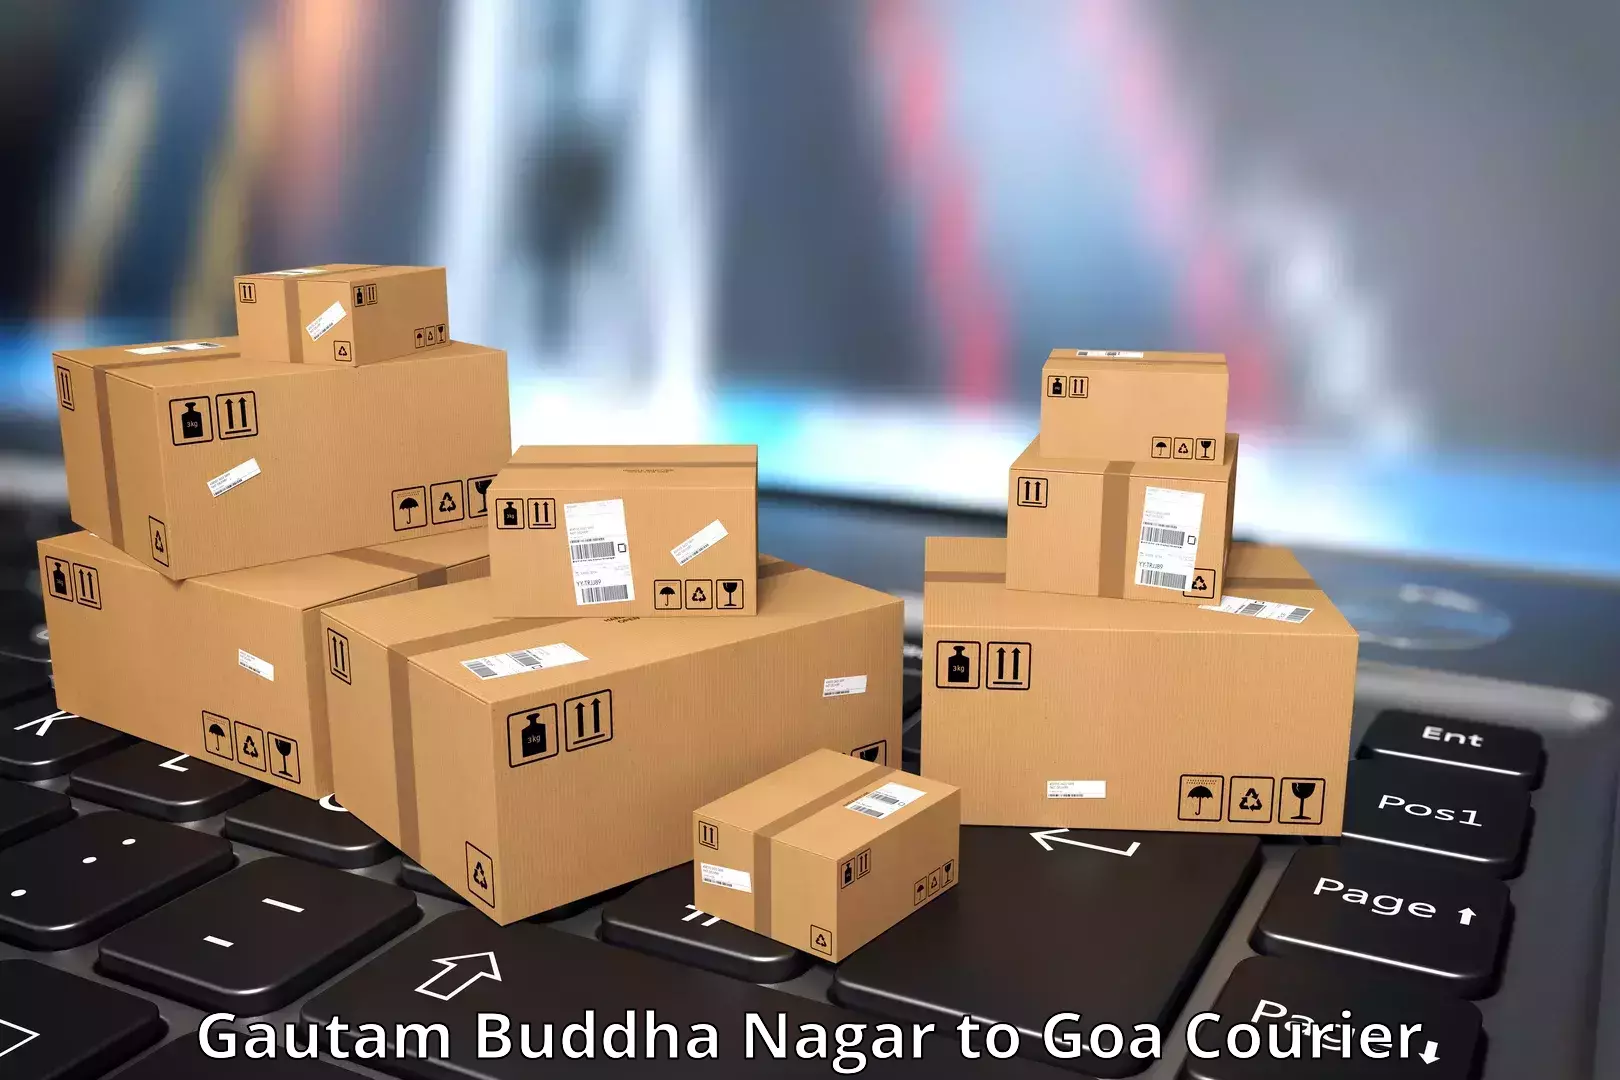 Premium courier solutions Gautam Buddha Nagar to NIT Goa